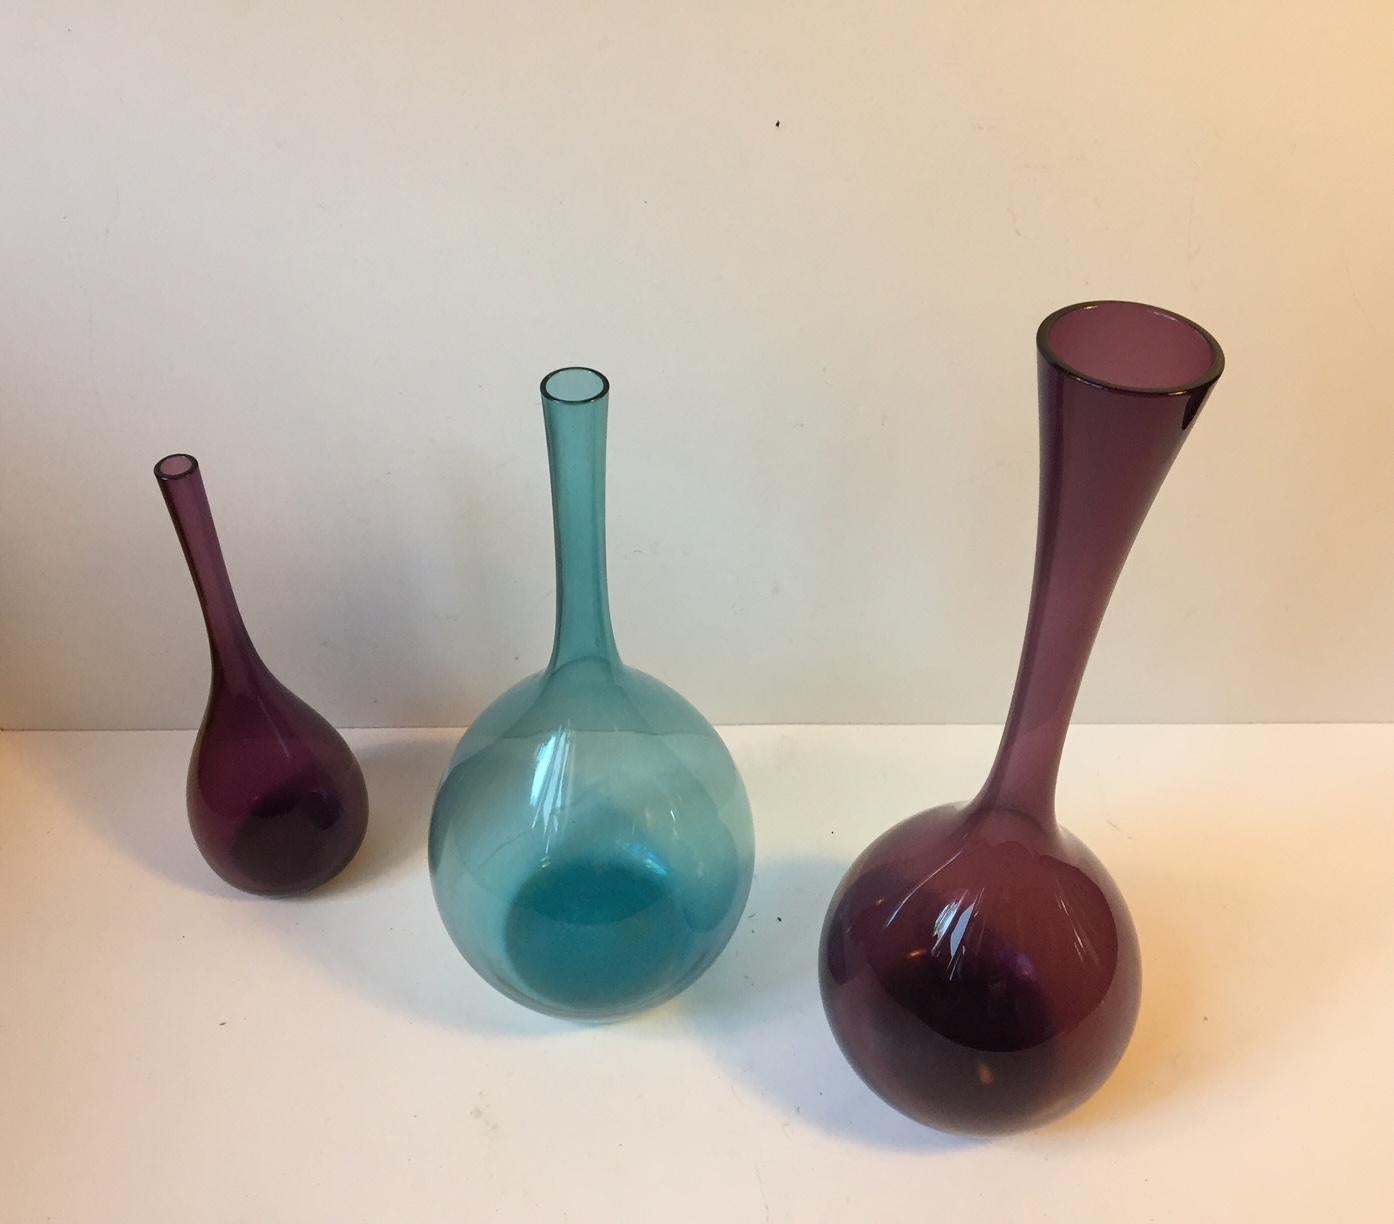 Mid-Century Modern Swedish Modernist Glass Vases by Arthur Percy for Gullaskruf, 1950s, Set of 3